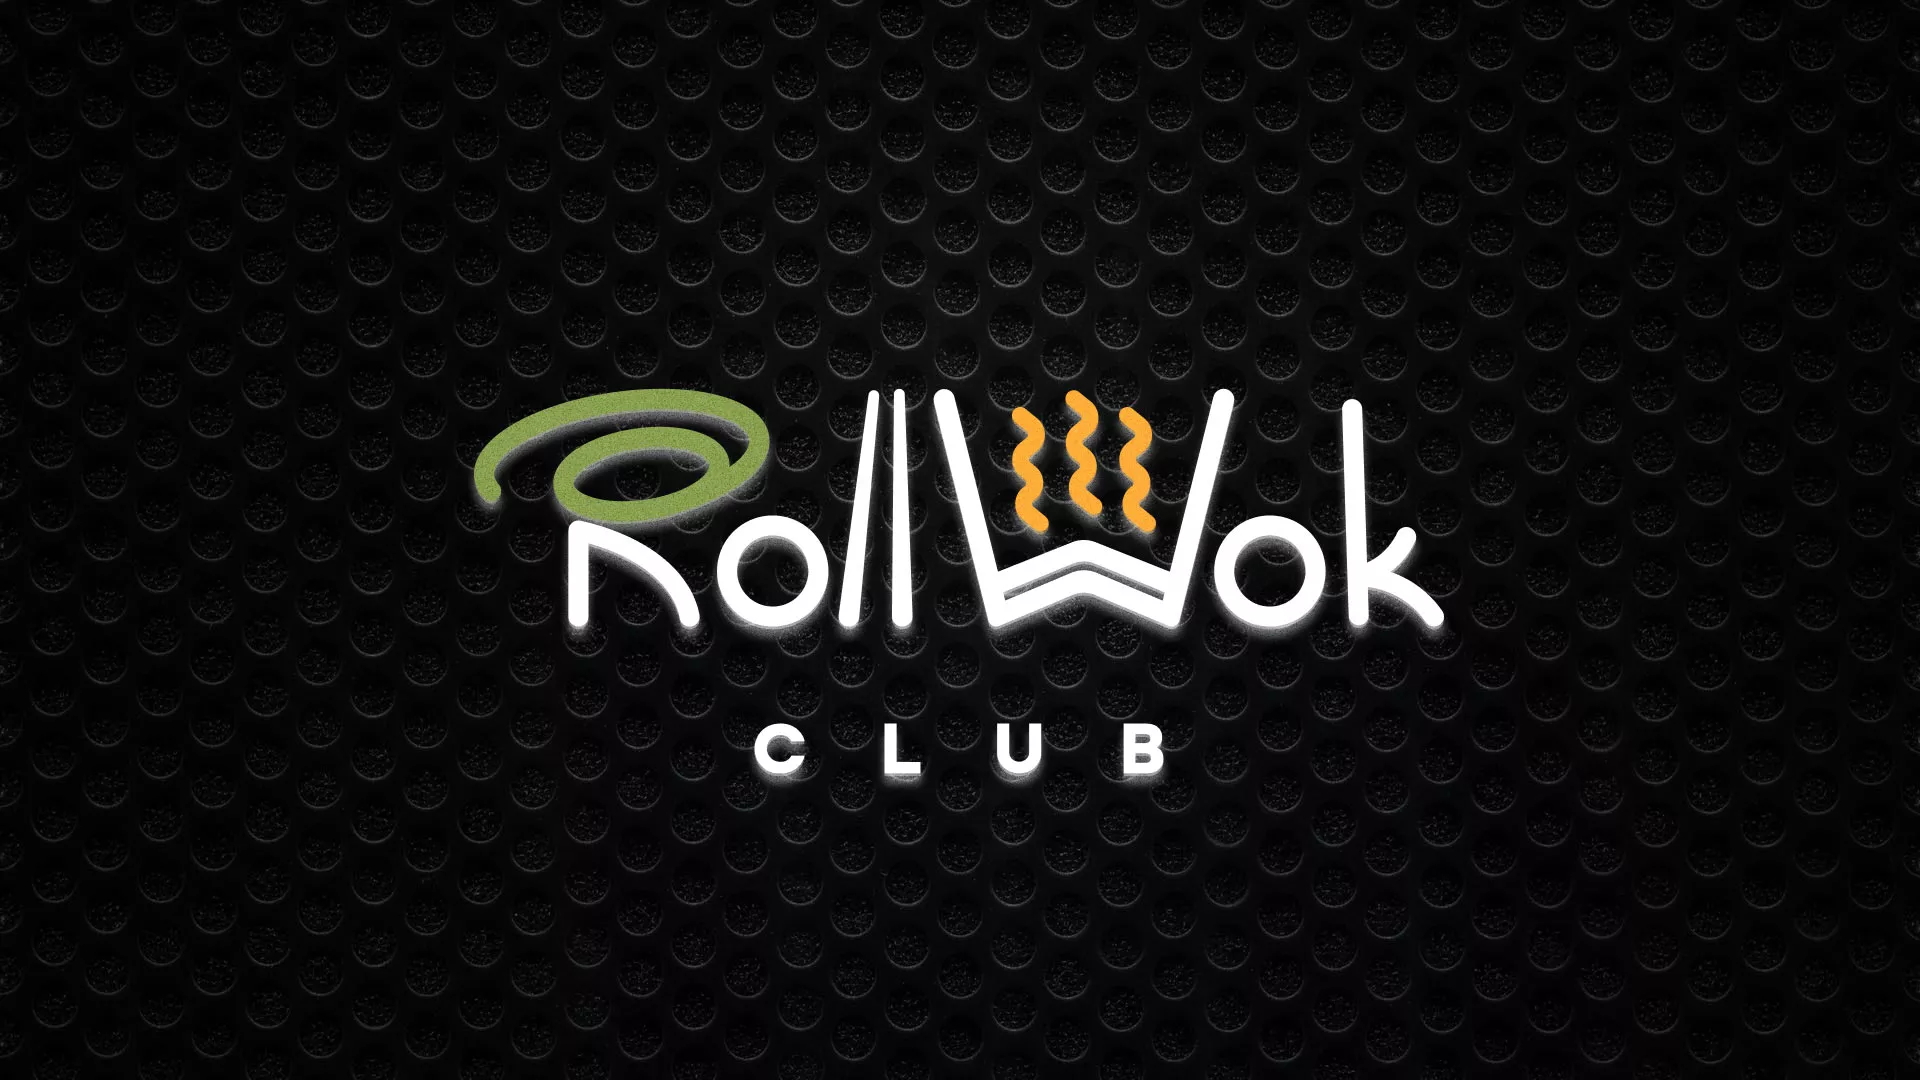 Брендирование торговых точек суши-бара «Roll Wok Club» в Горбатове